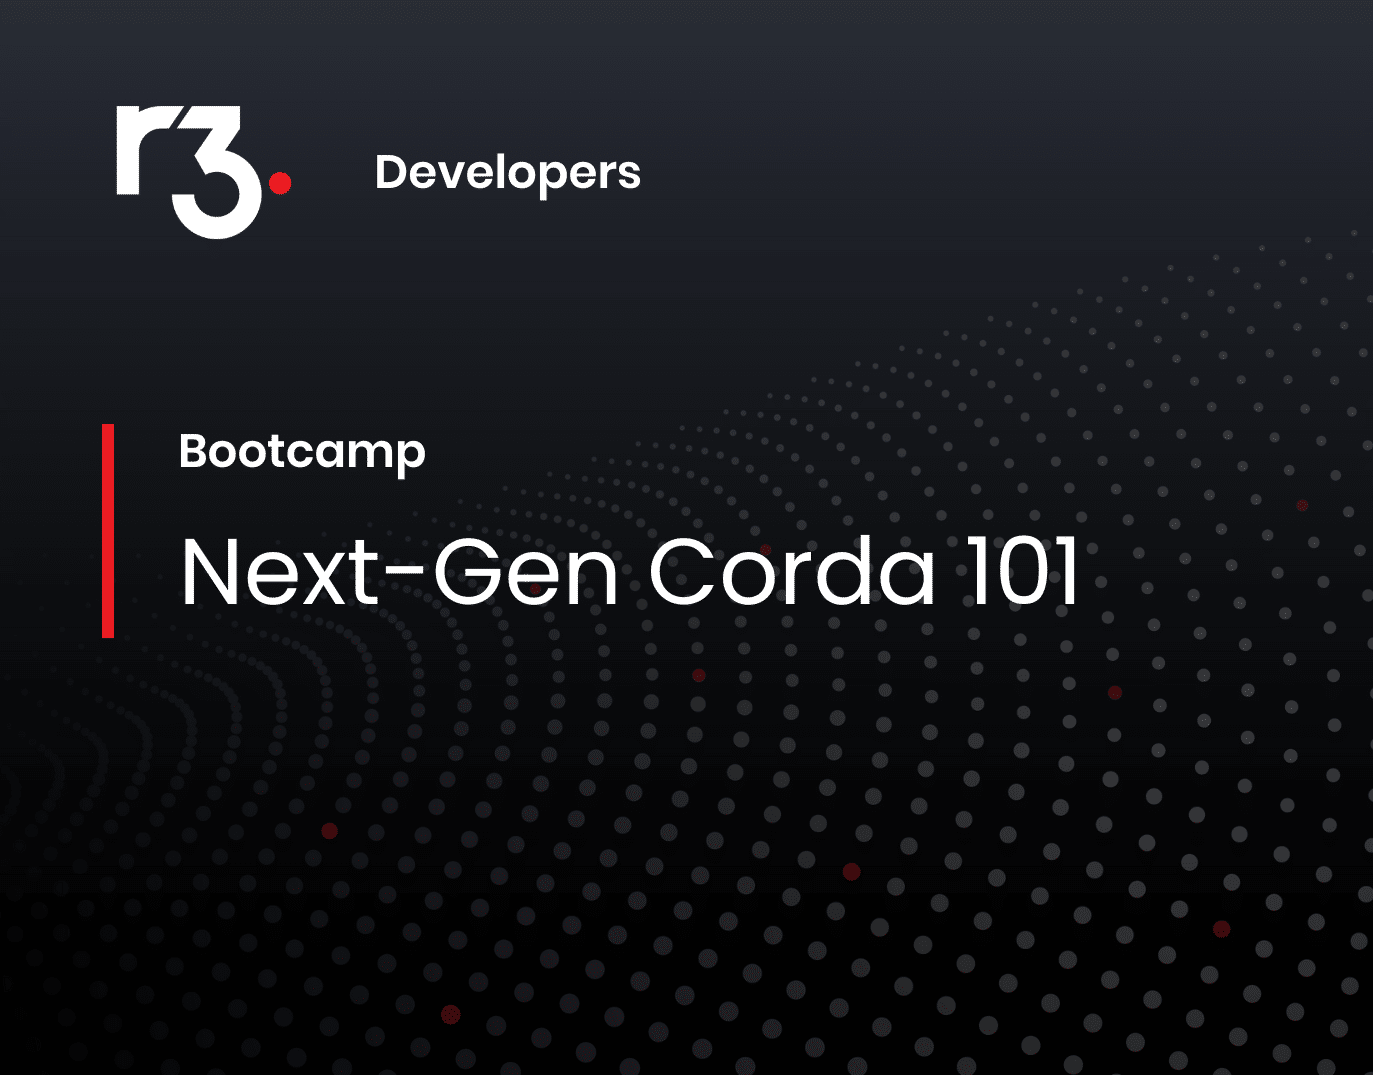 Next-Gen Corda 101 background